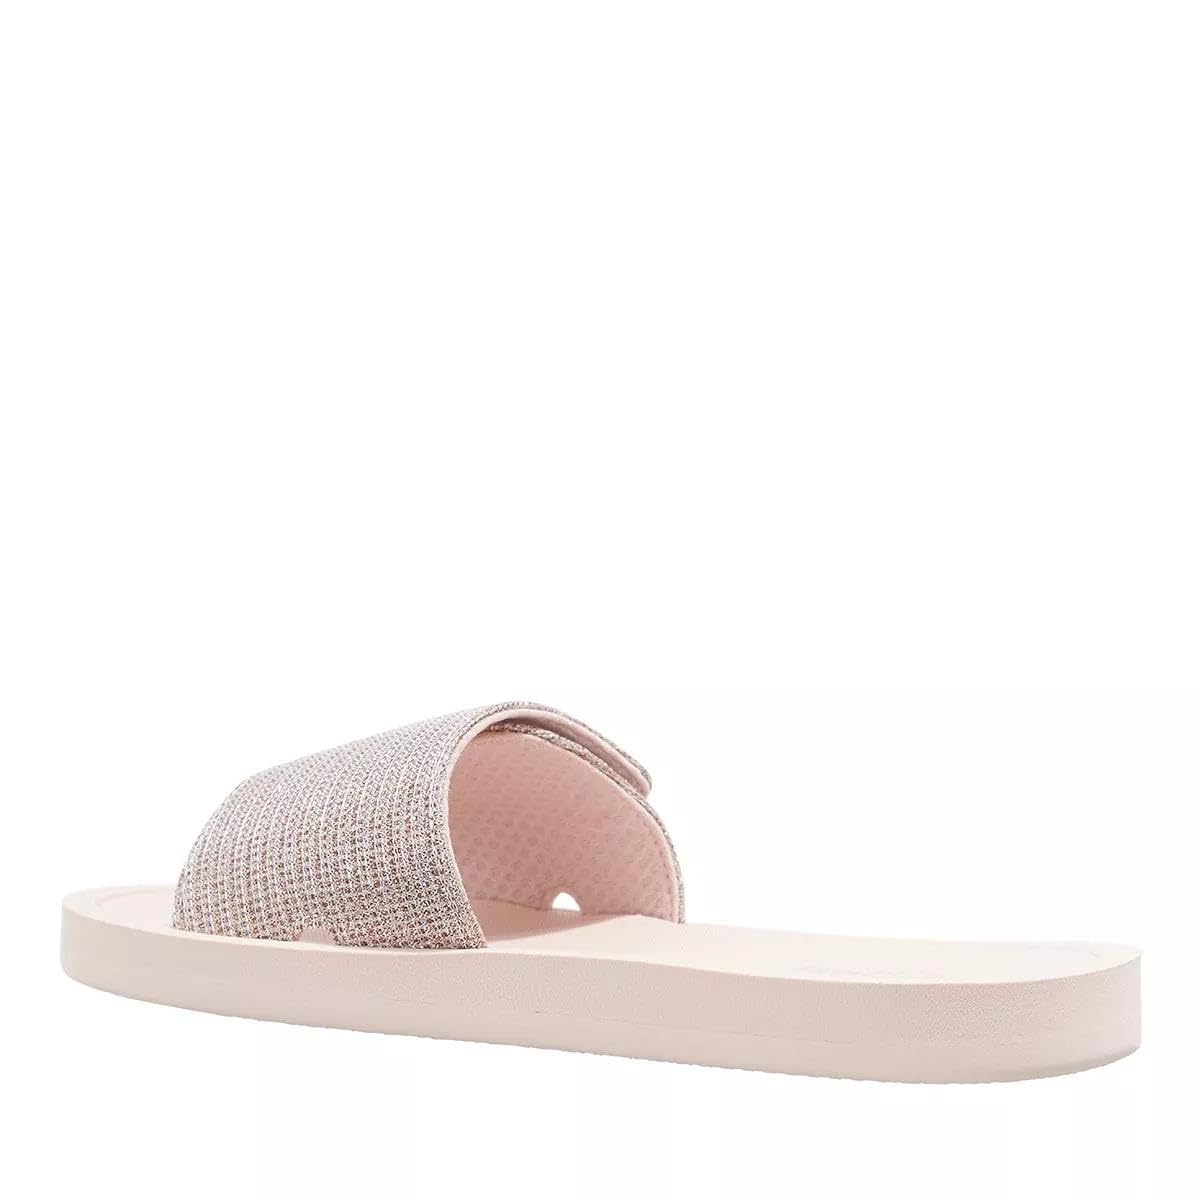 Michael Kors Slide Sandals Size 8  Aftersix Lifestyle Inc